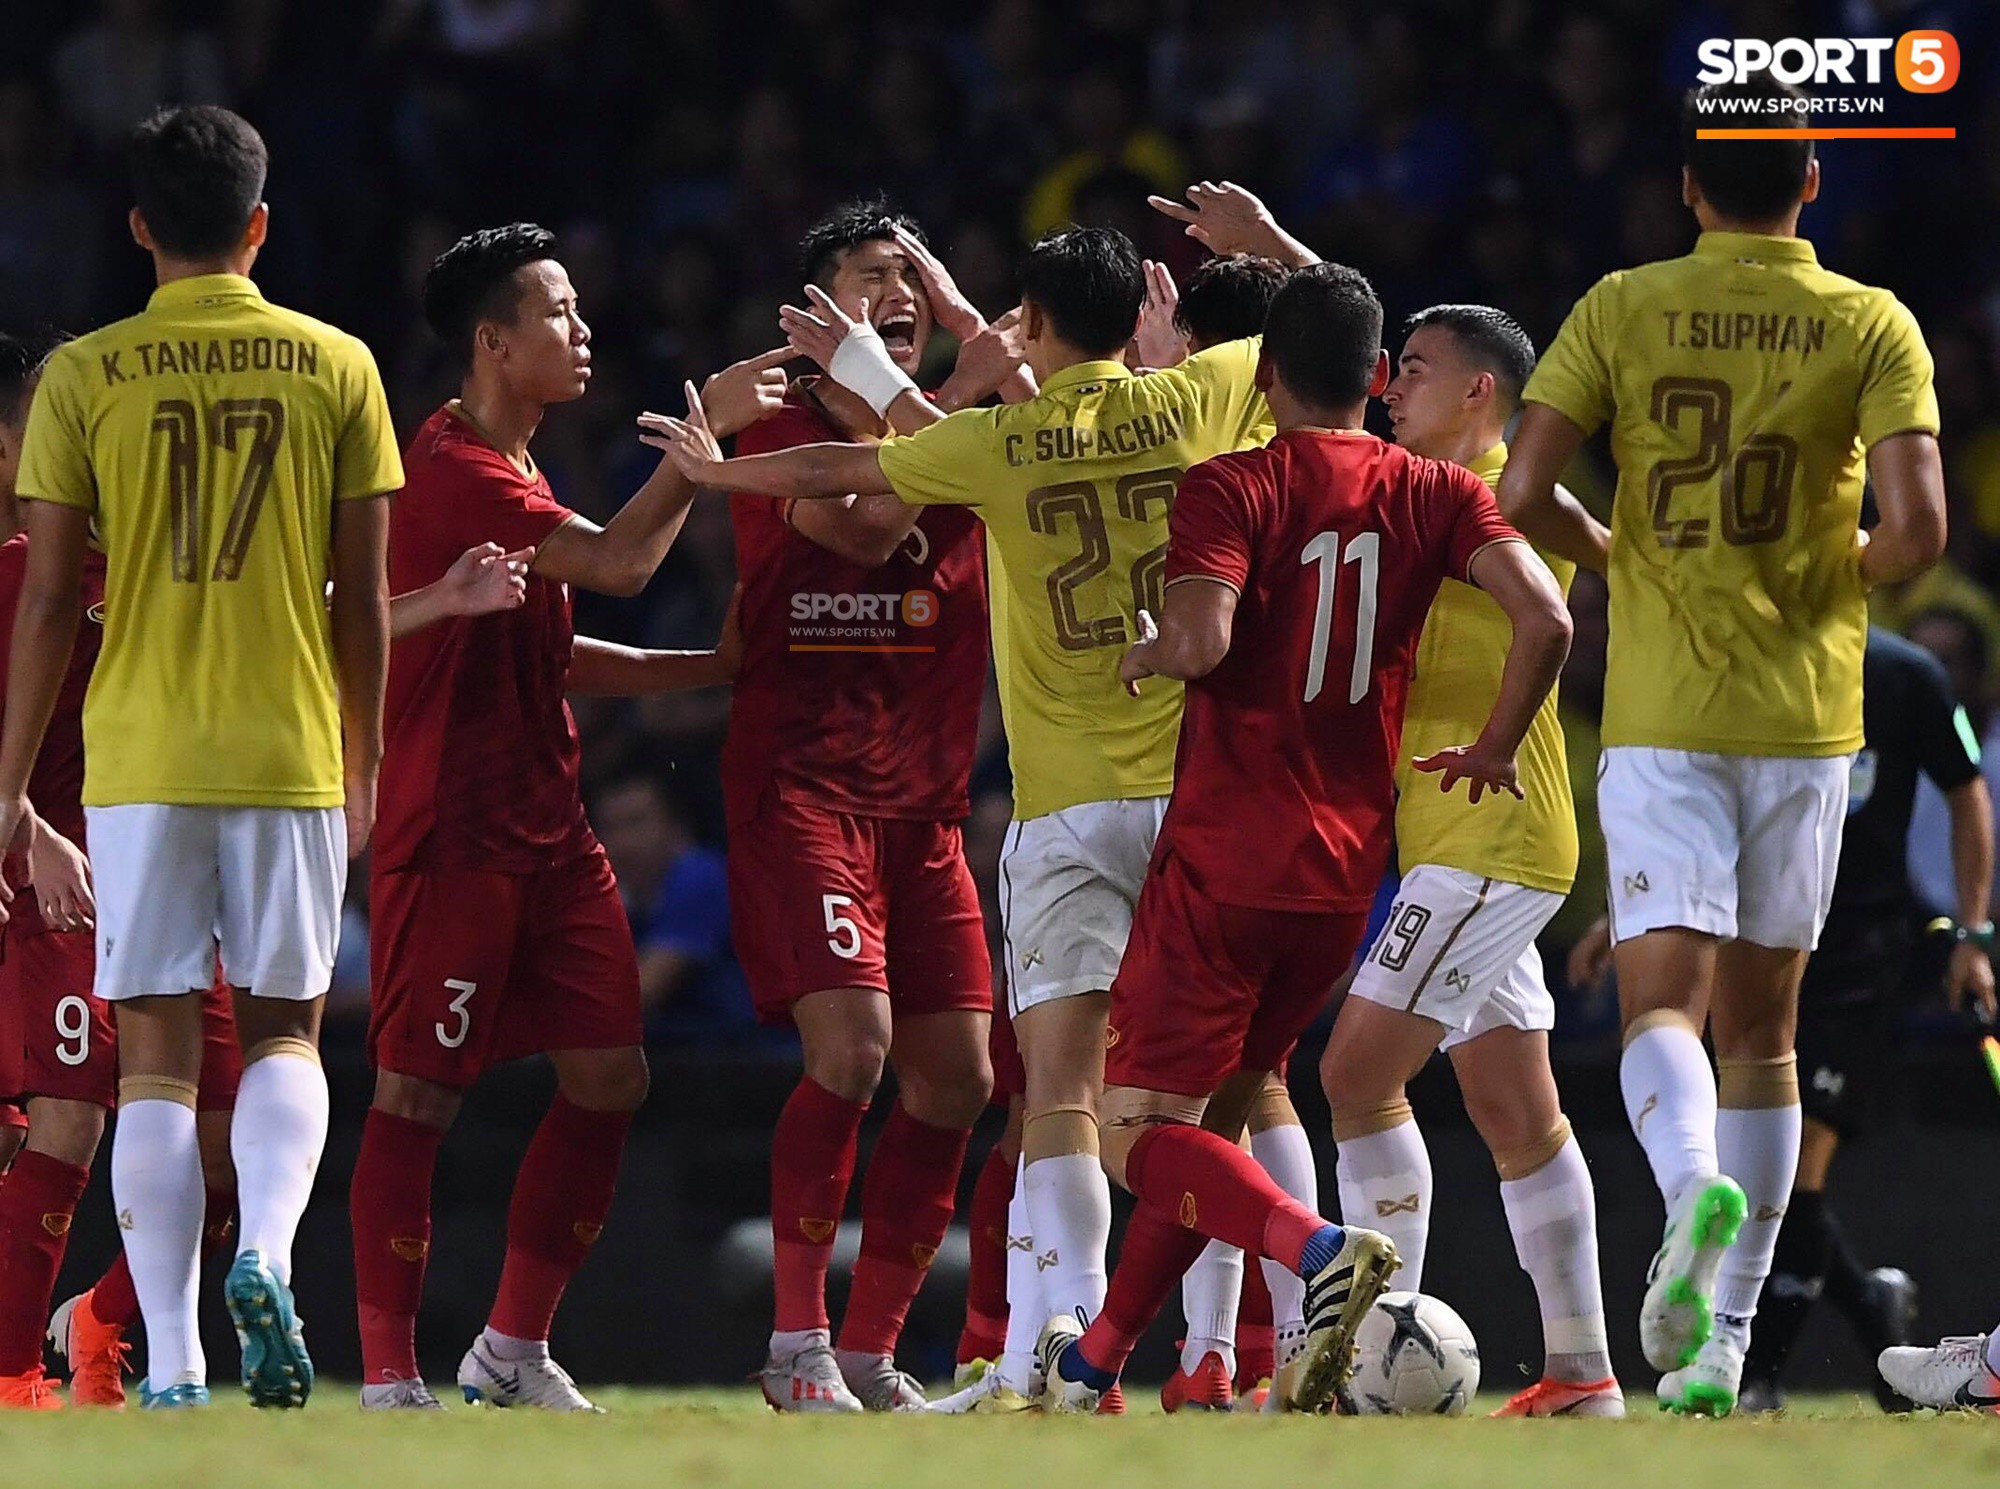 Ngôi sao Thái Lan đang thi đấu ở Nhật Bản tát vào mặt em út Văn Hậu của tuyển Việt Nam - Ảnh 2.